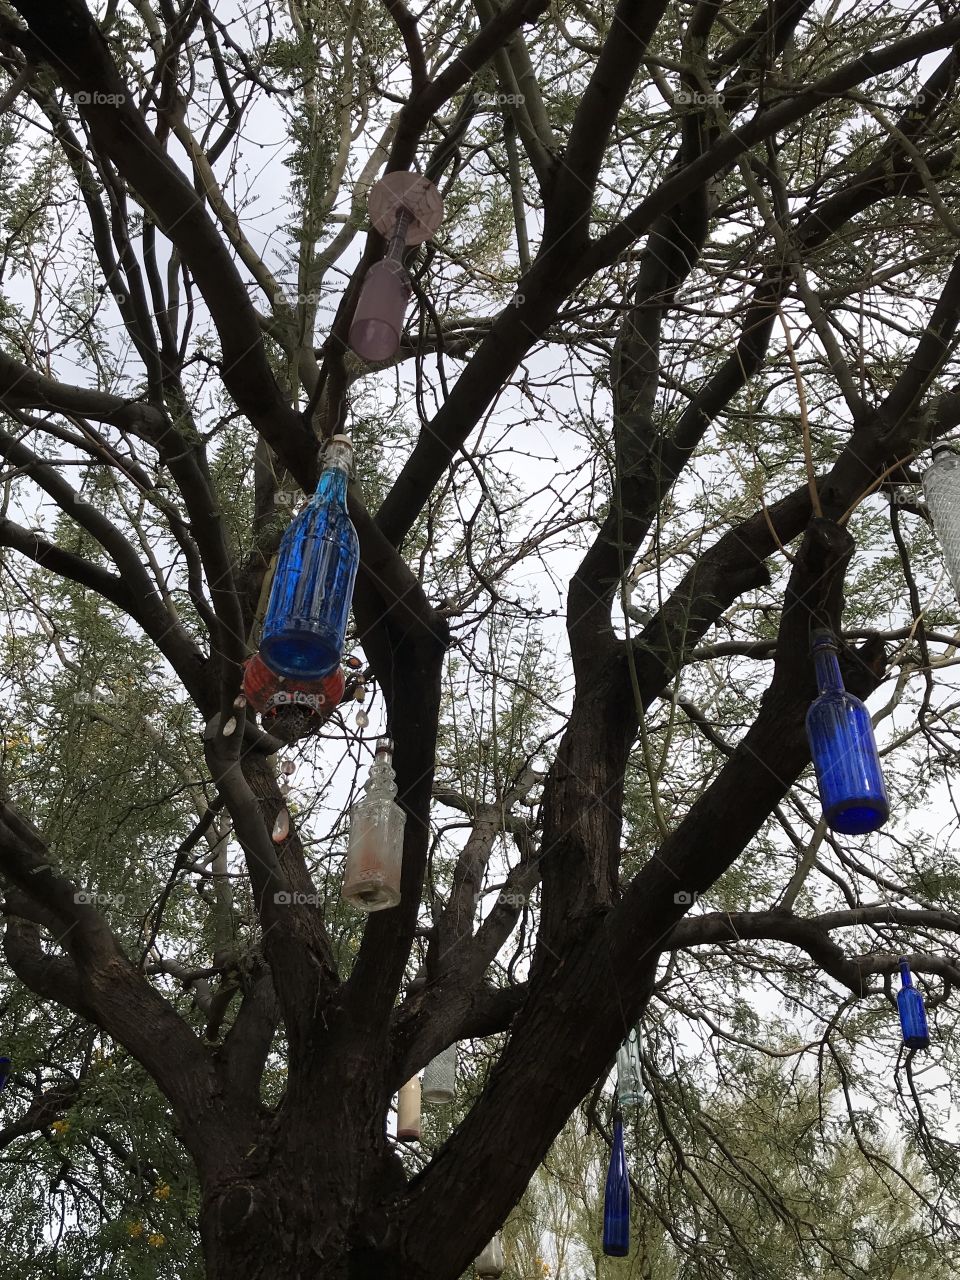 Bottles in Tree
